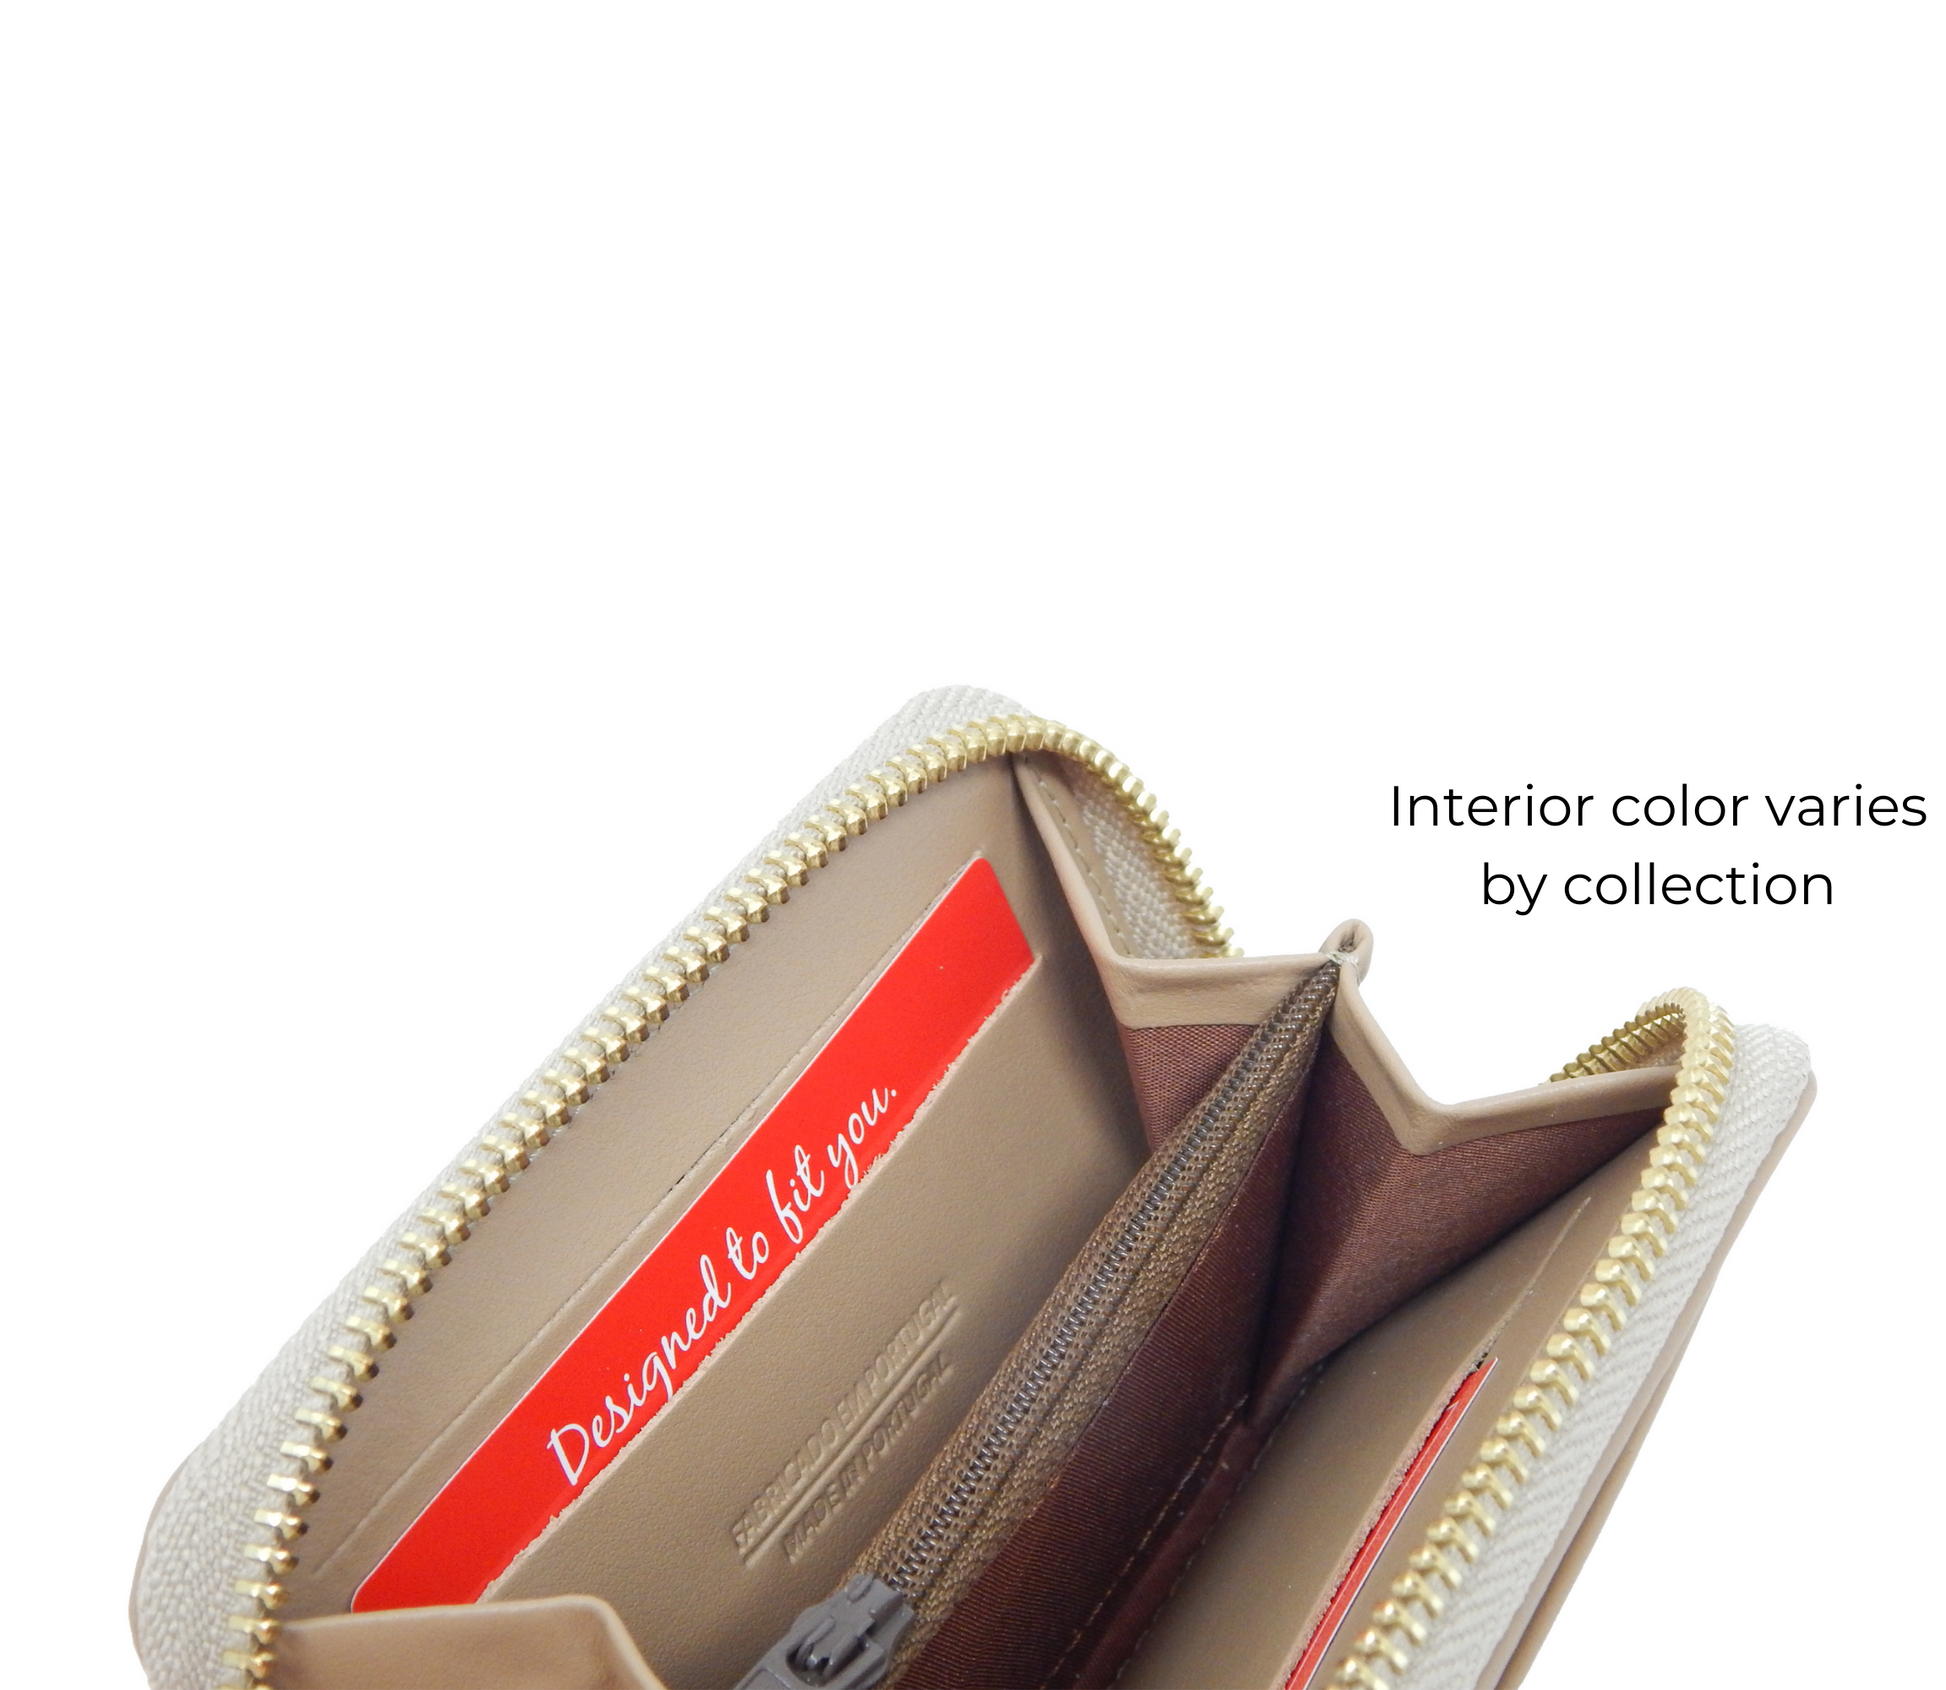 #color_ SaddleBrown | Cavalinho Gallop Patent Leather Card Holder - SaddleBrown - 28170275.13-Internal0275.05